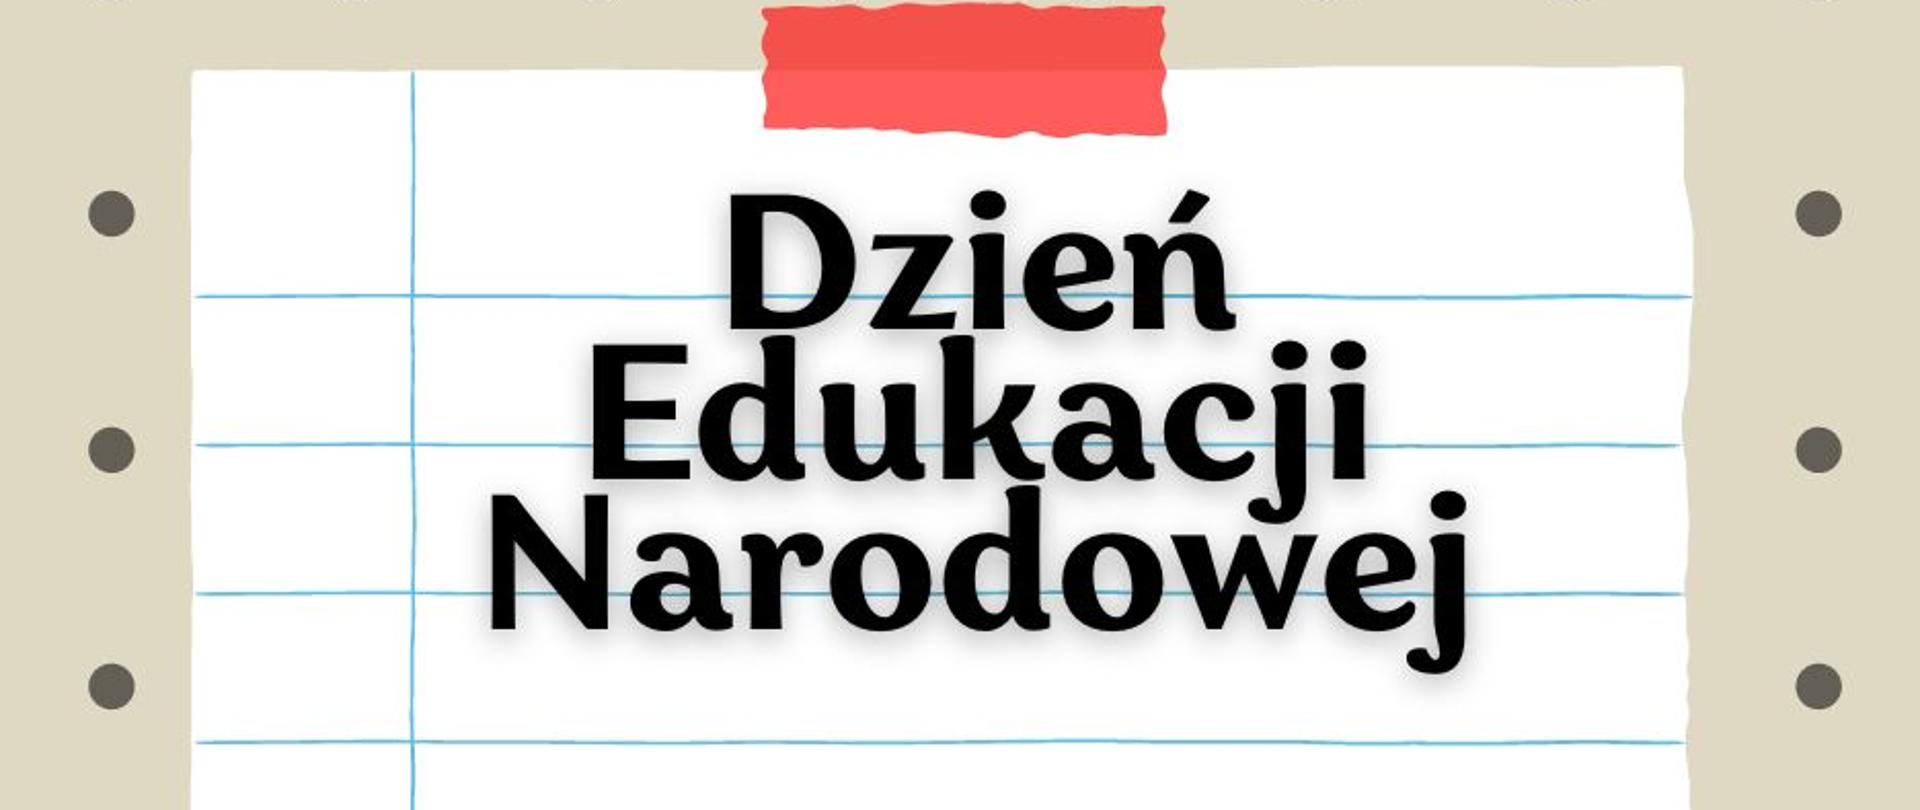 Napis "Dzień Edukacji Narodowej" na kartce papieru w linie, na beżowym tle w kropki